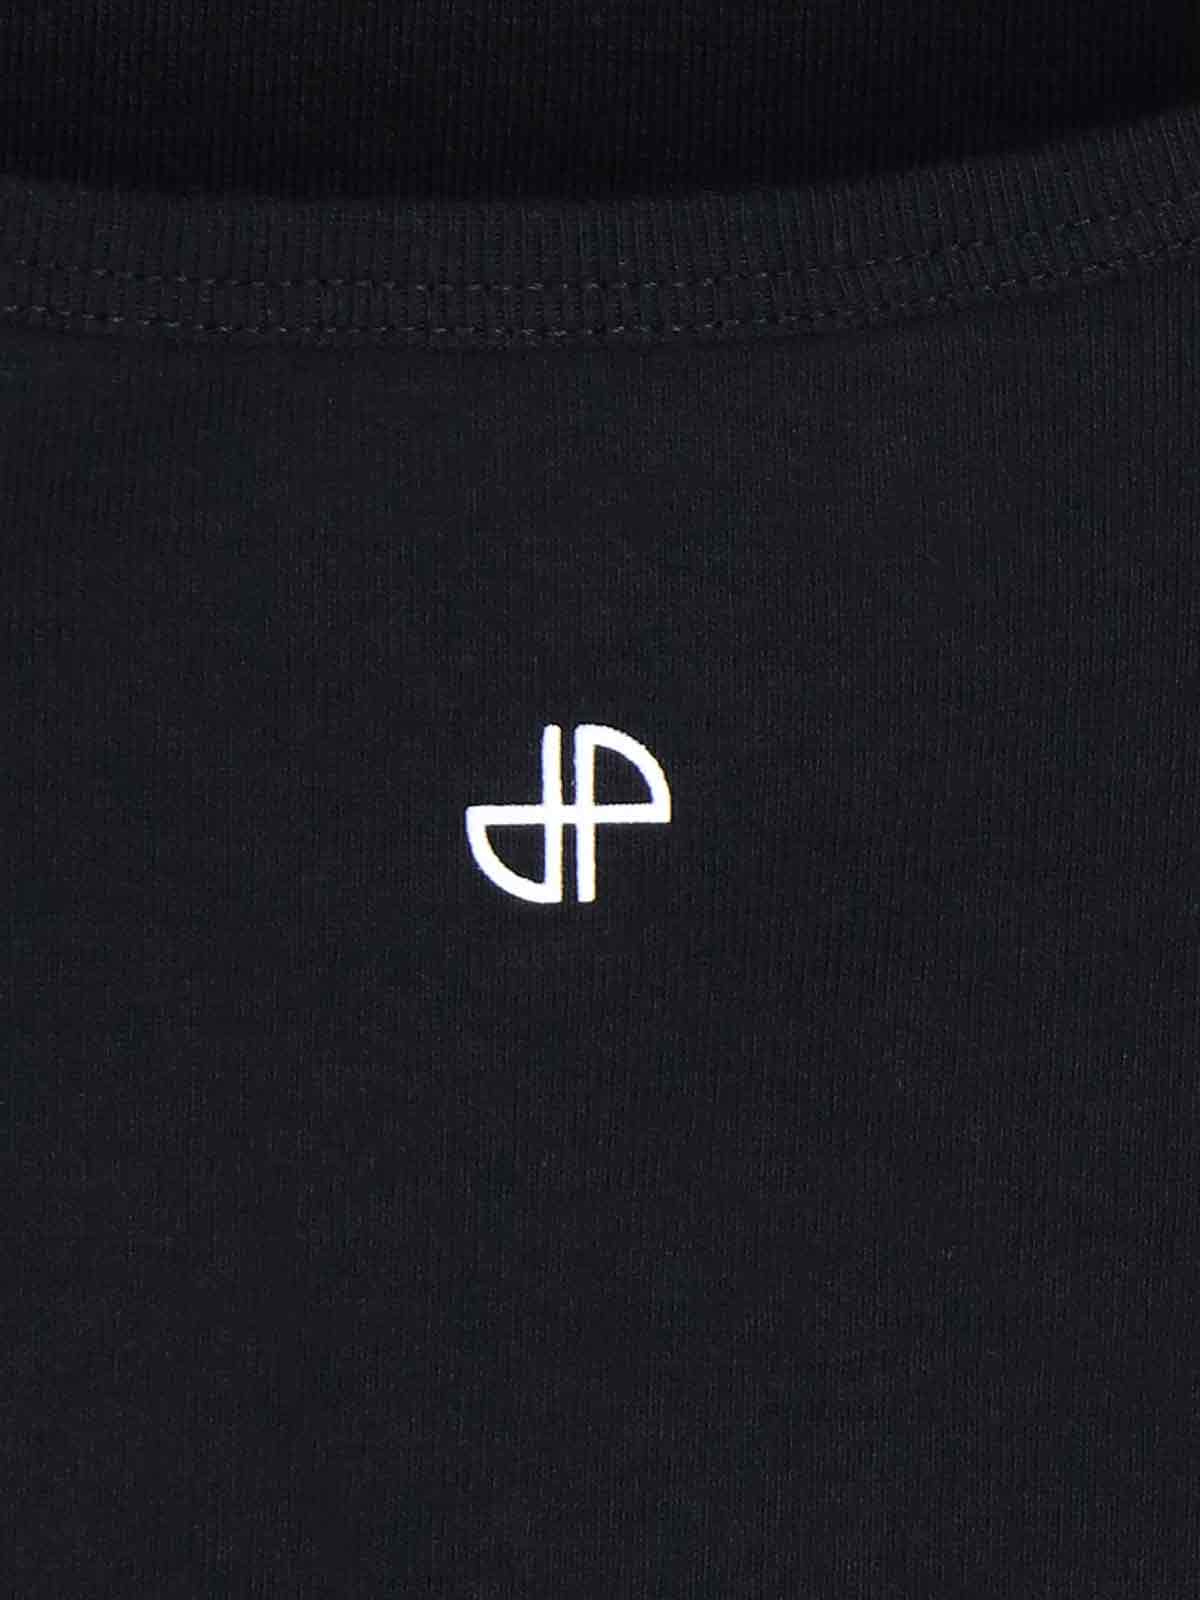 Shop Patou Logo Top In Black